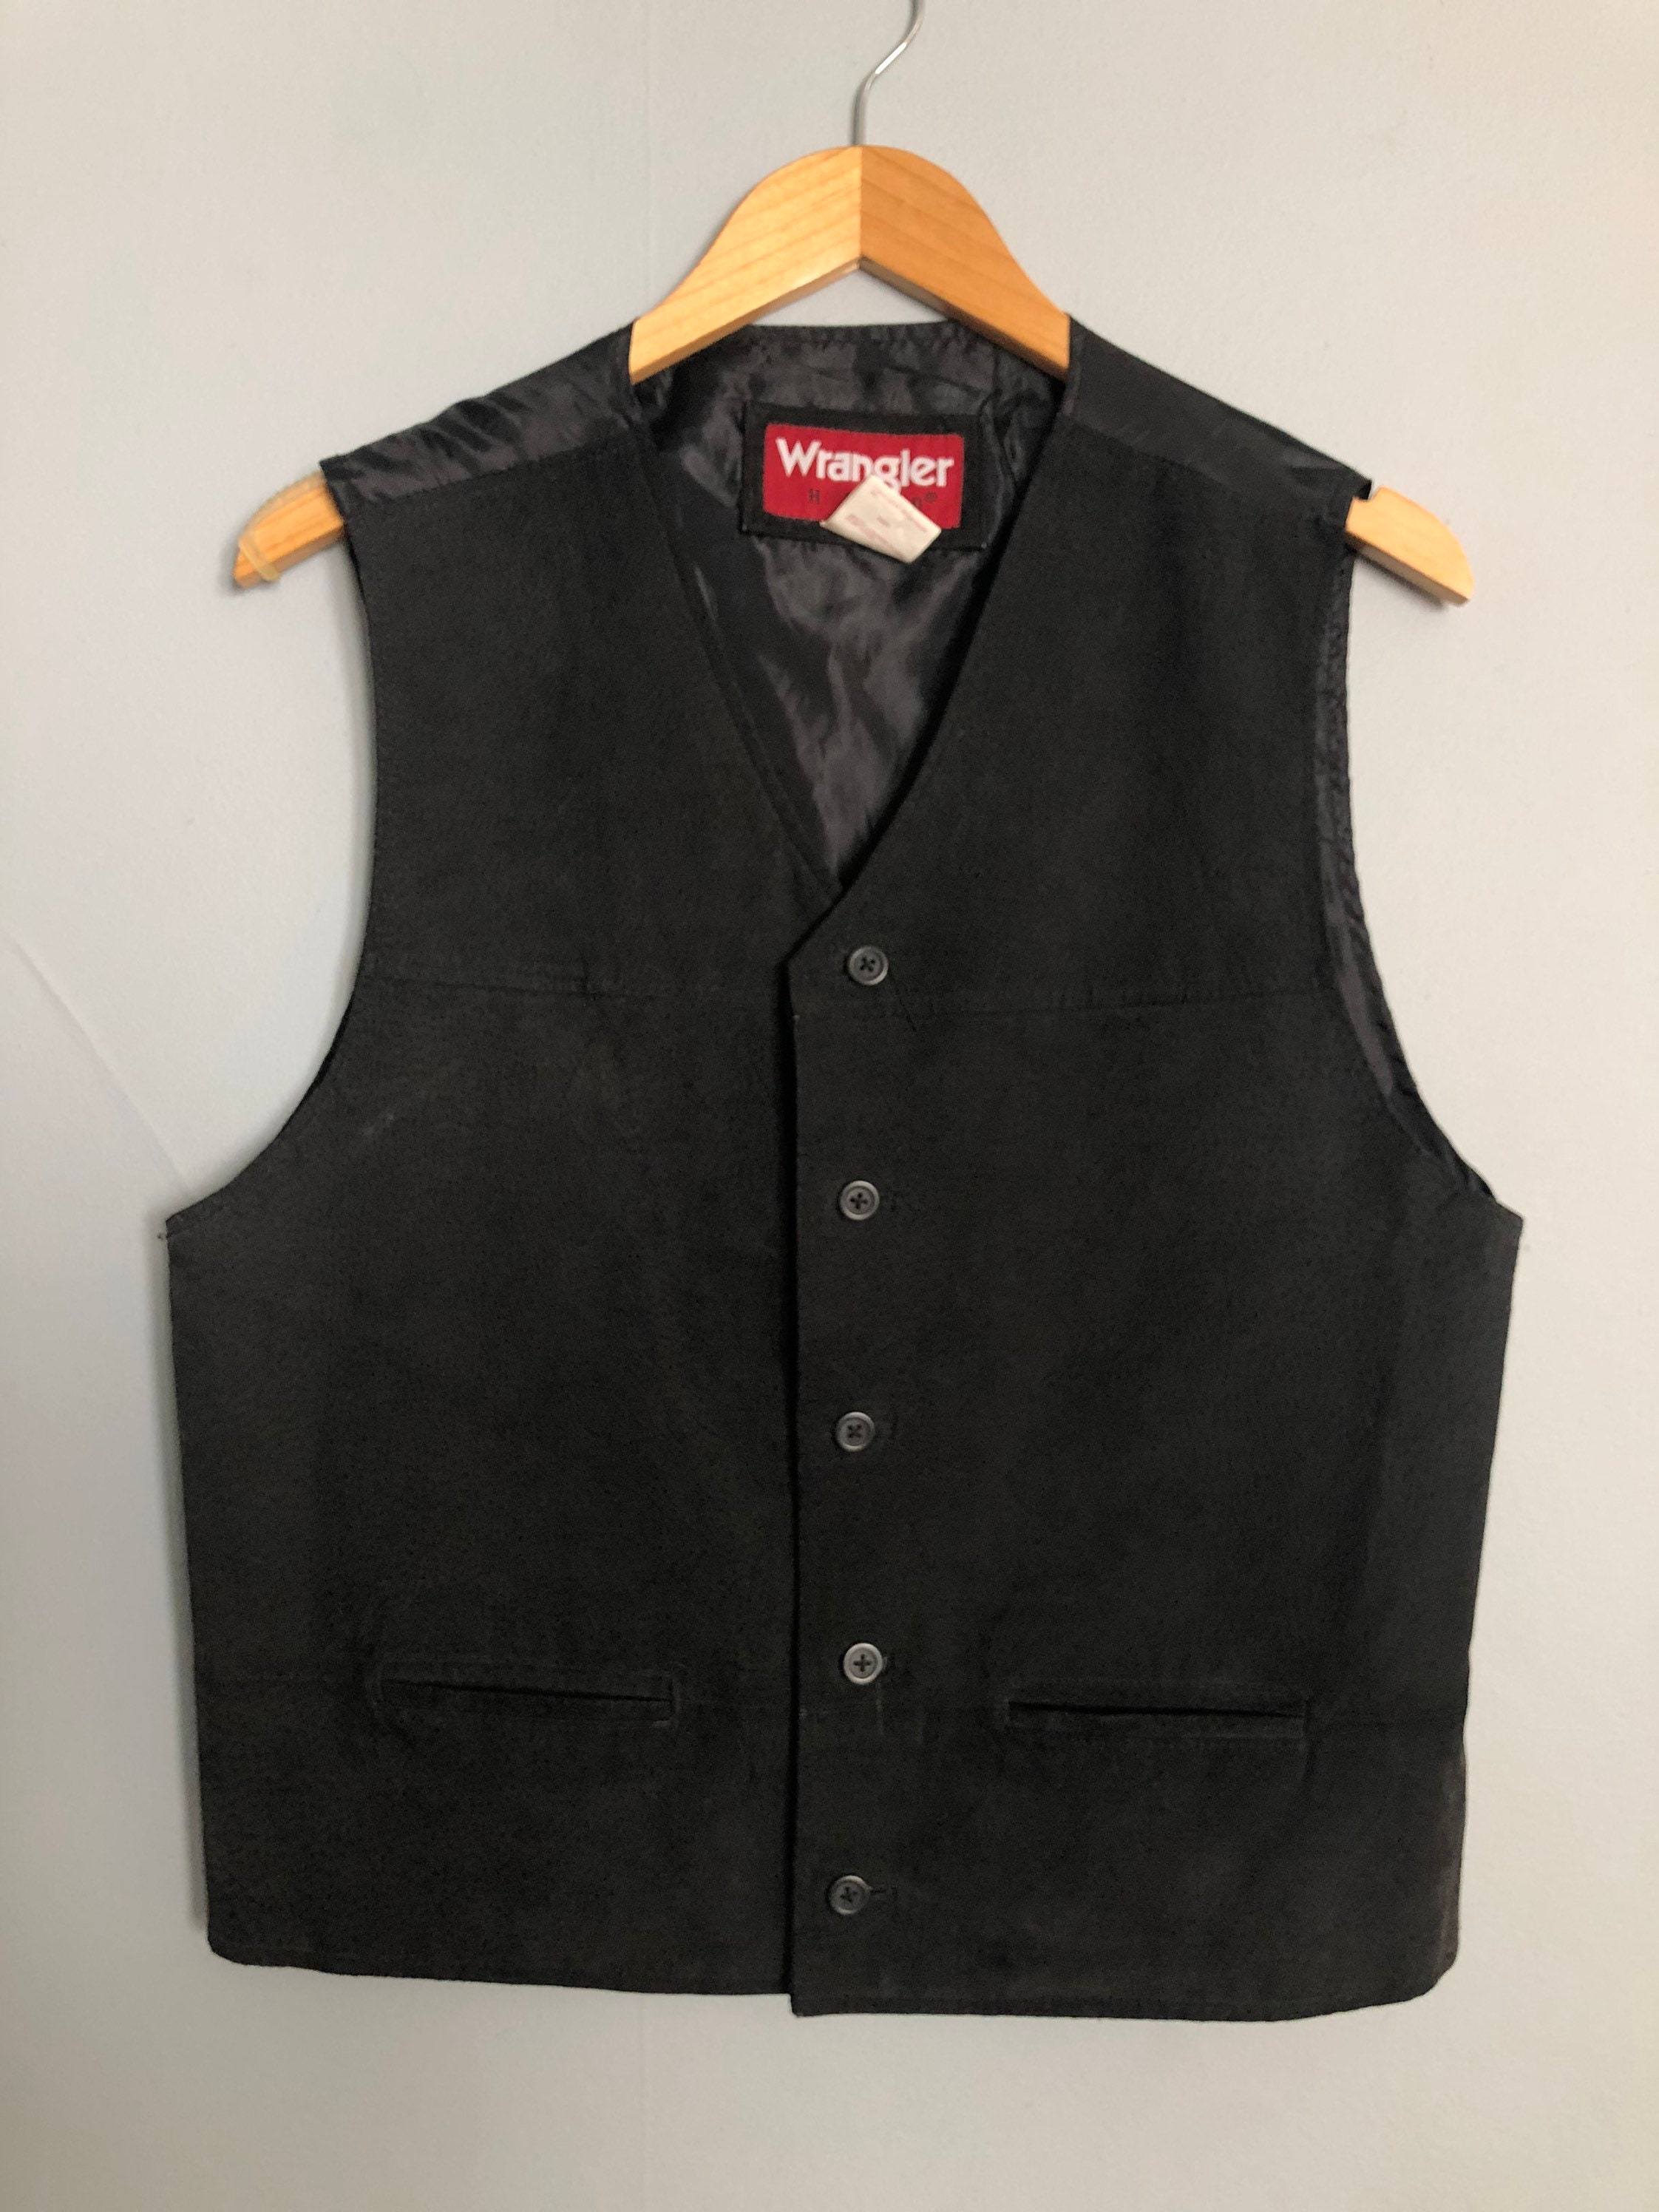 Vintage Mens Wrangler Leather Vest - Etsy